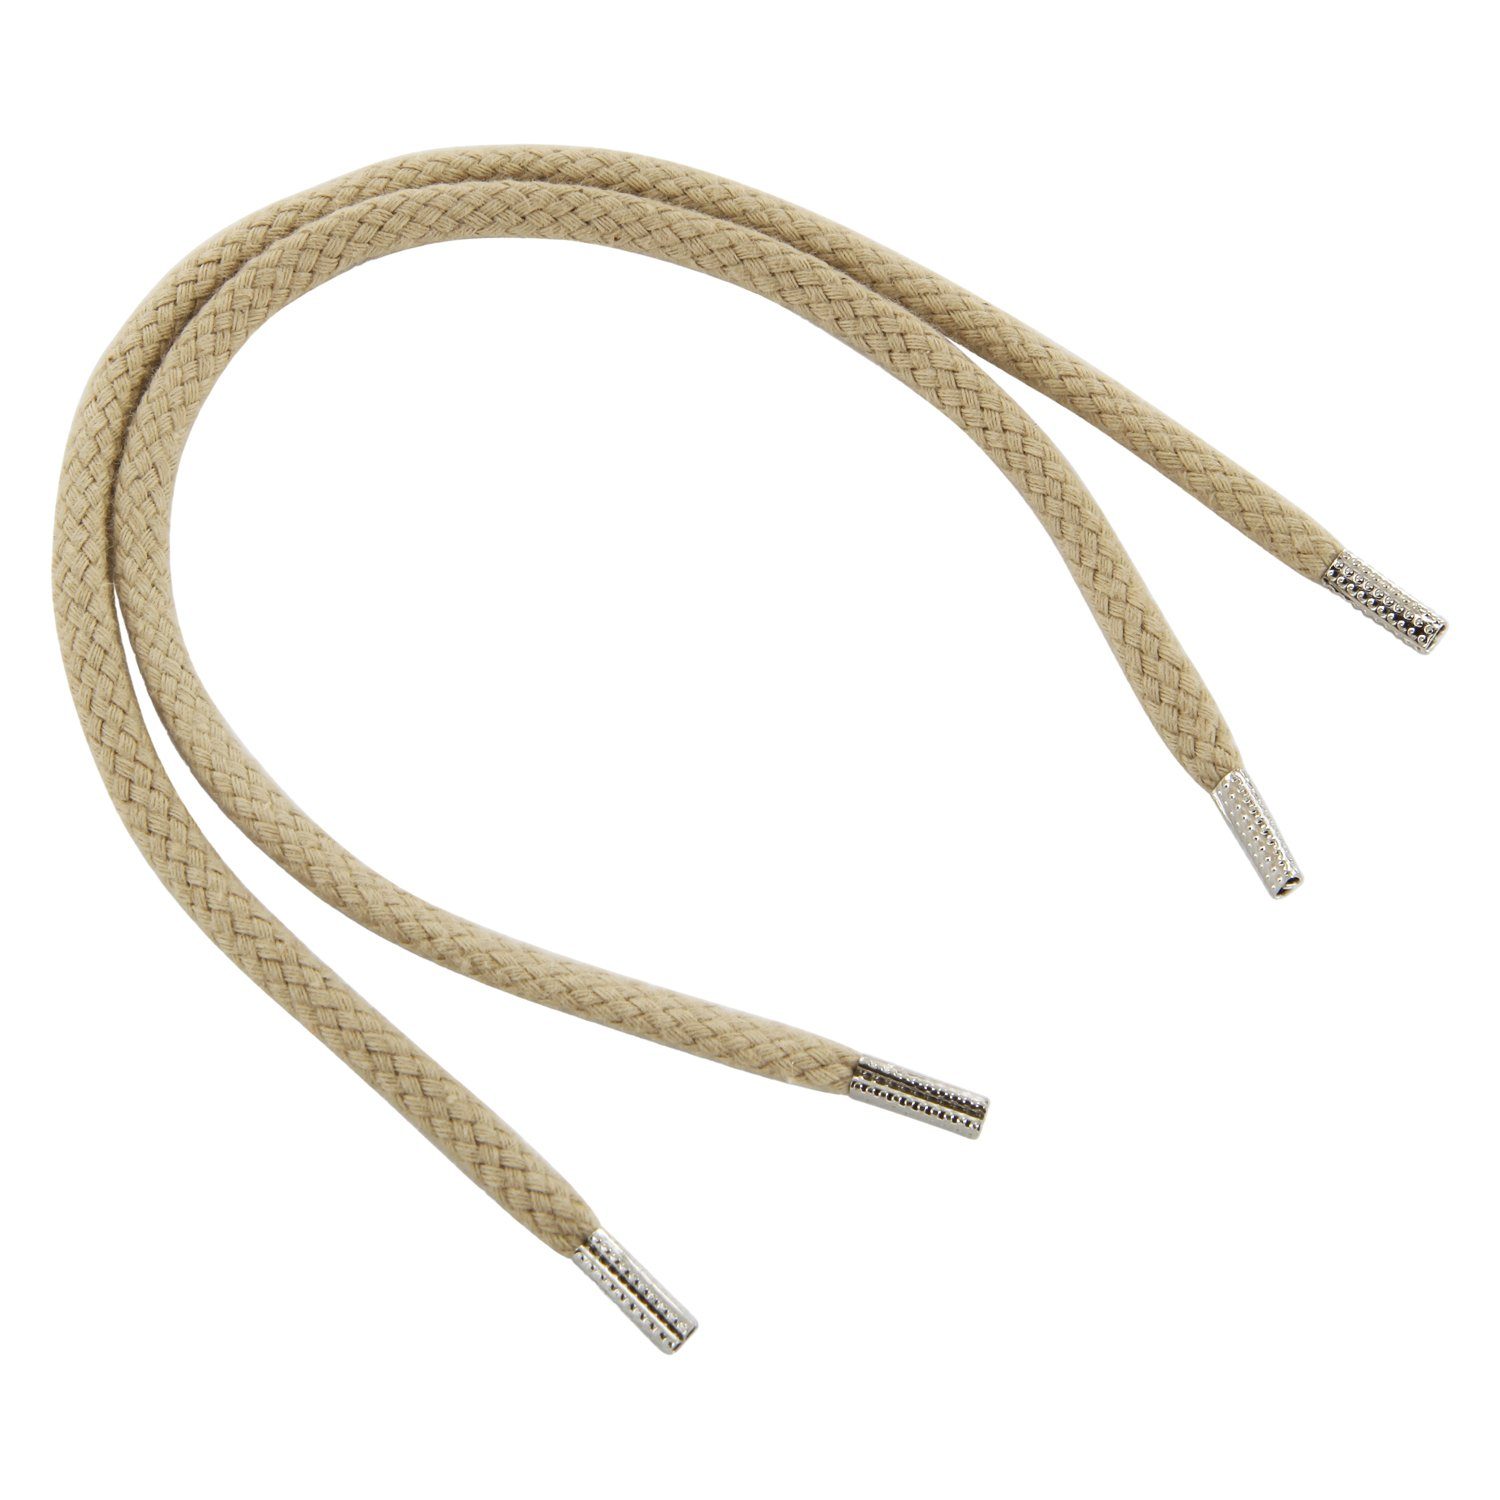 Rema Schnürsenkel Rema Schnürsenkel Creme - rund - ca. 3 mm breit für Sie nach Wunschlänge geschnitten und mit Metallenden versehen